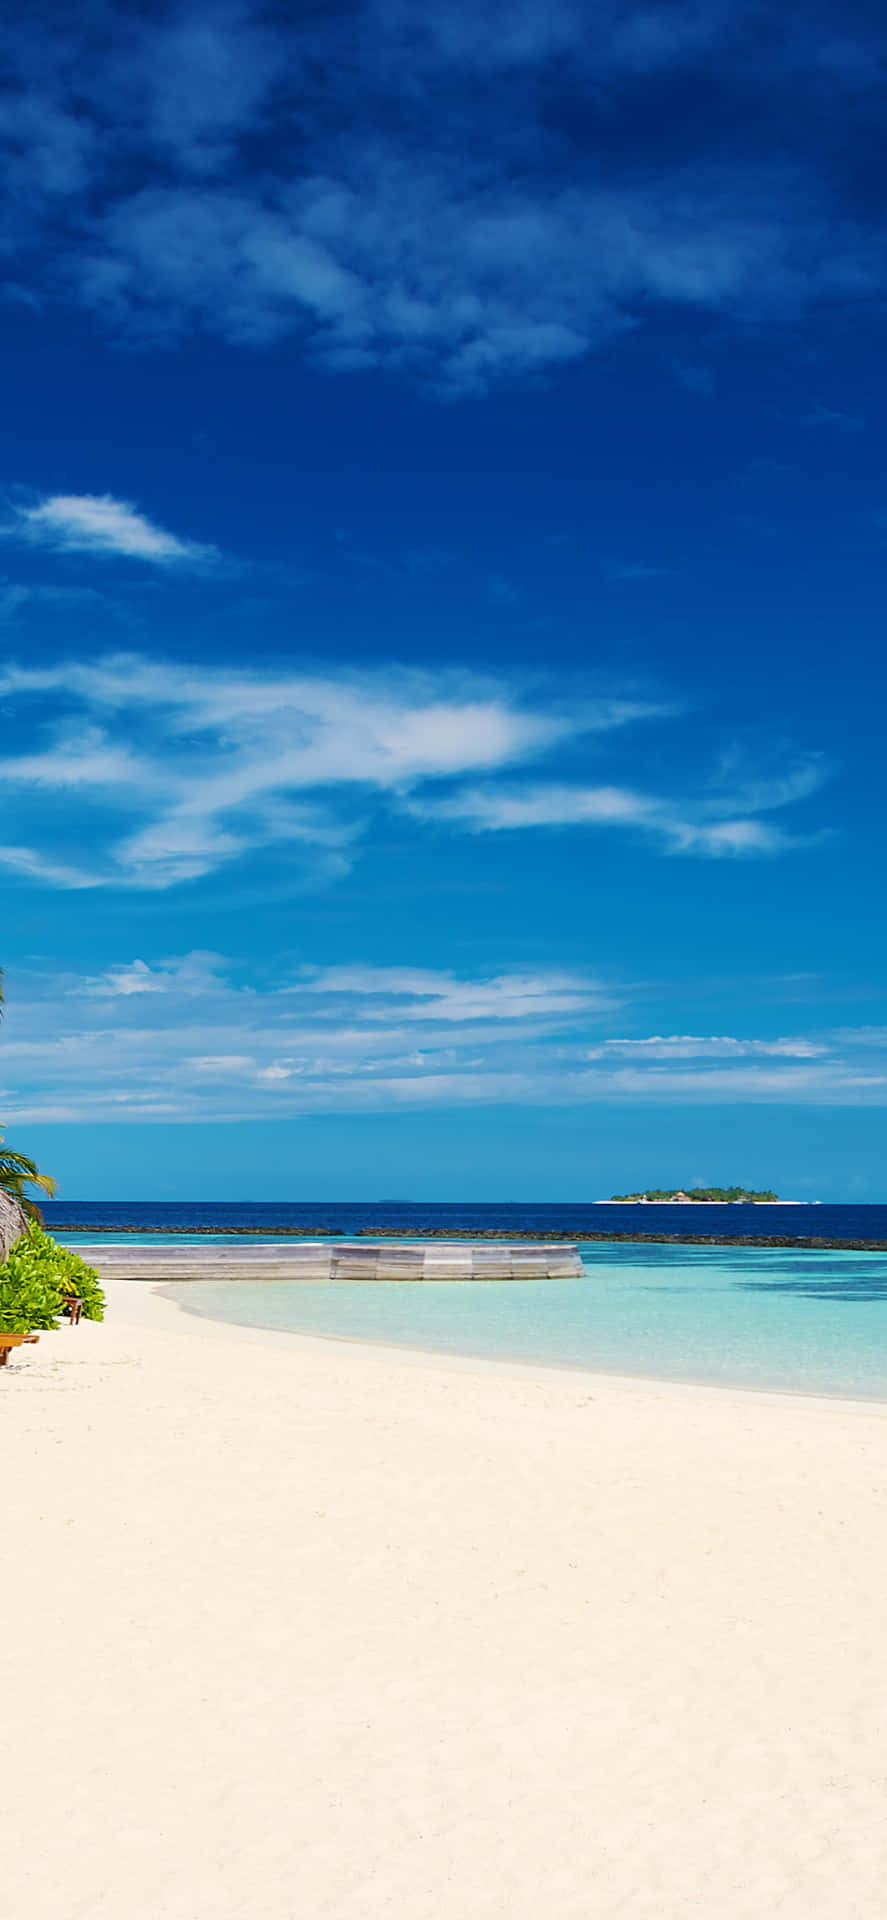 Ferie Paradis: Slap af og slappe af på en smuk tropisk ø. Wallpaper